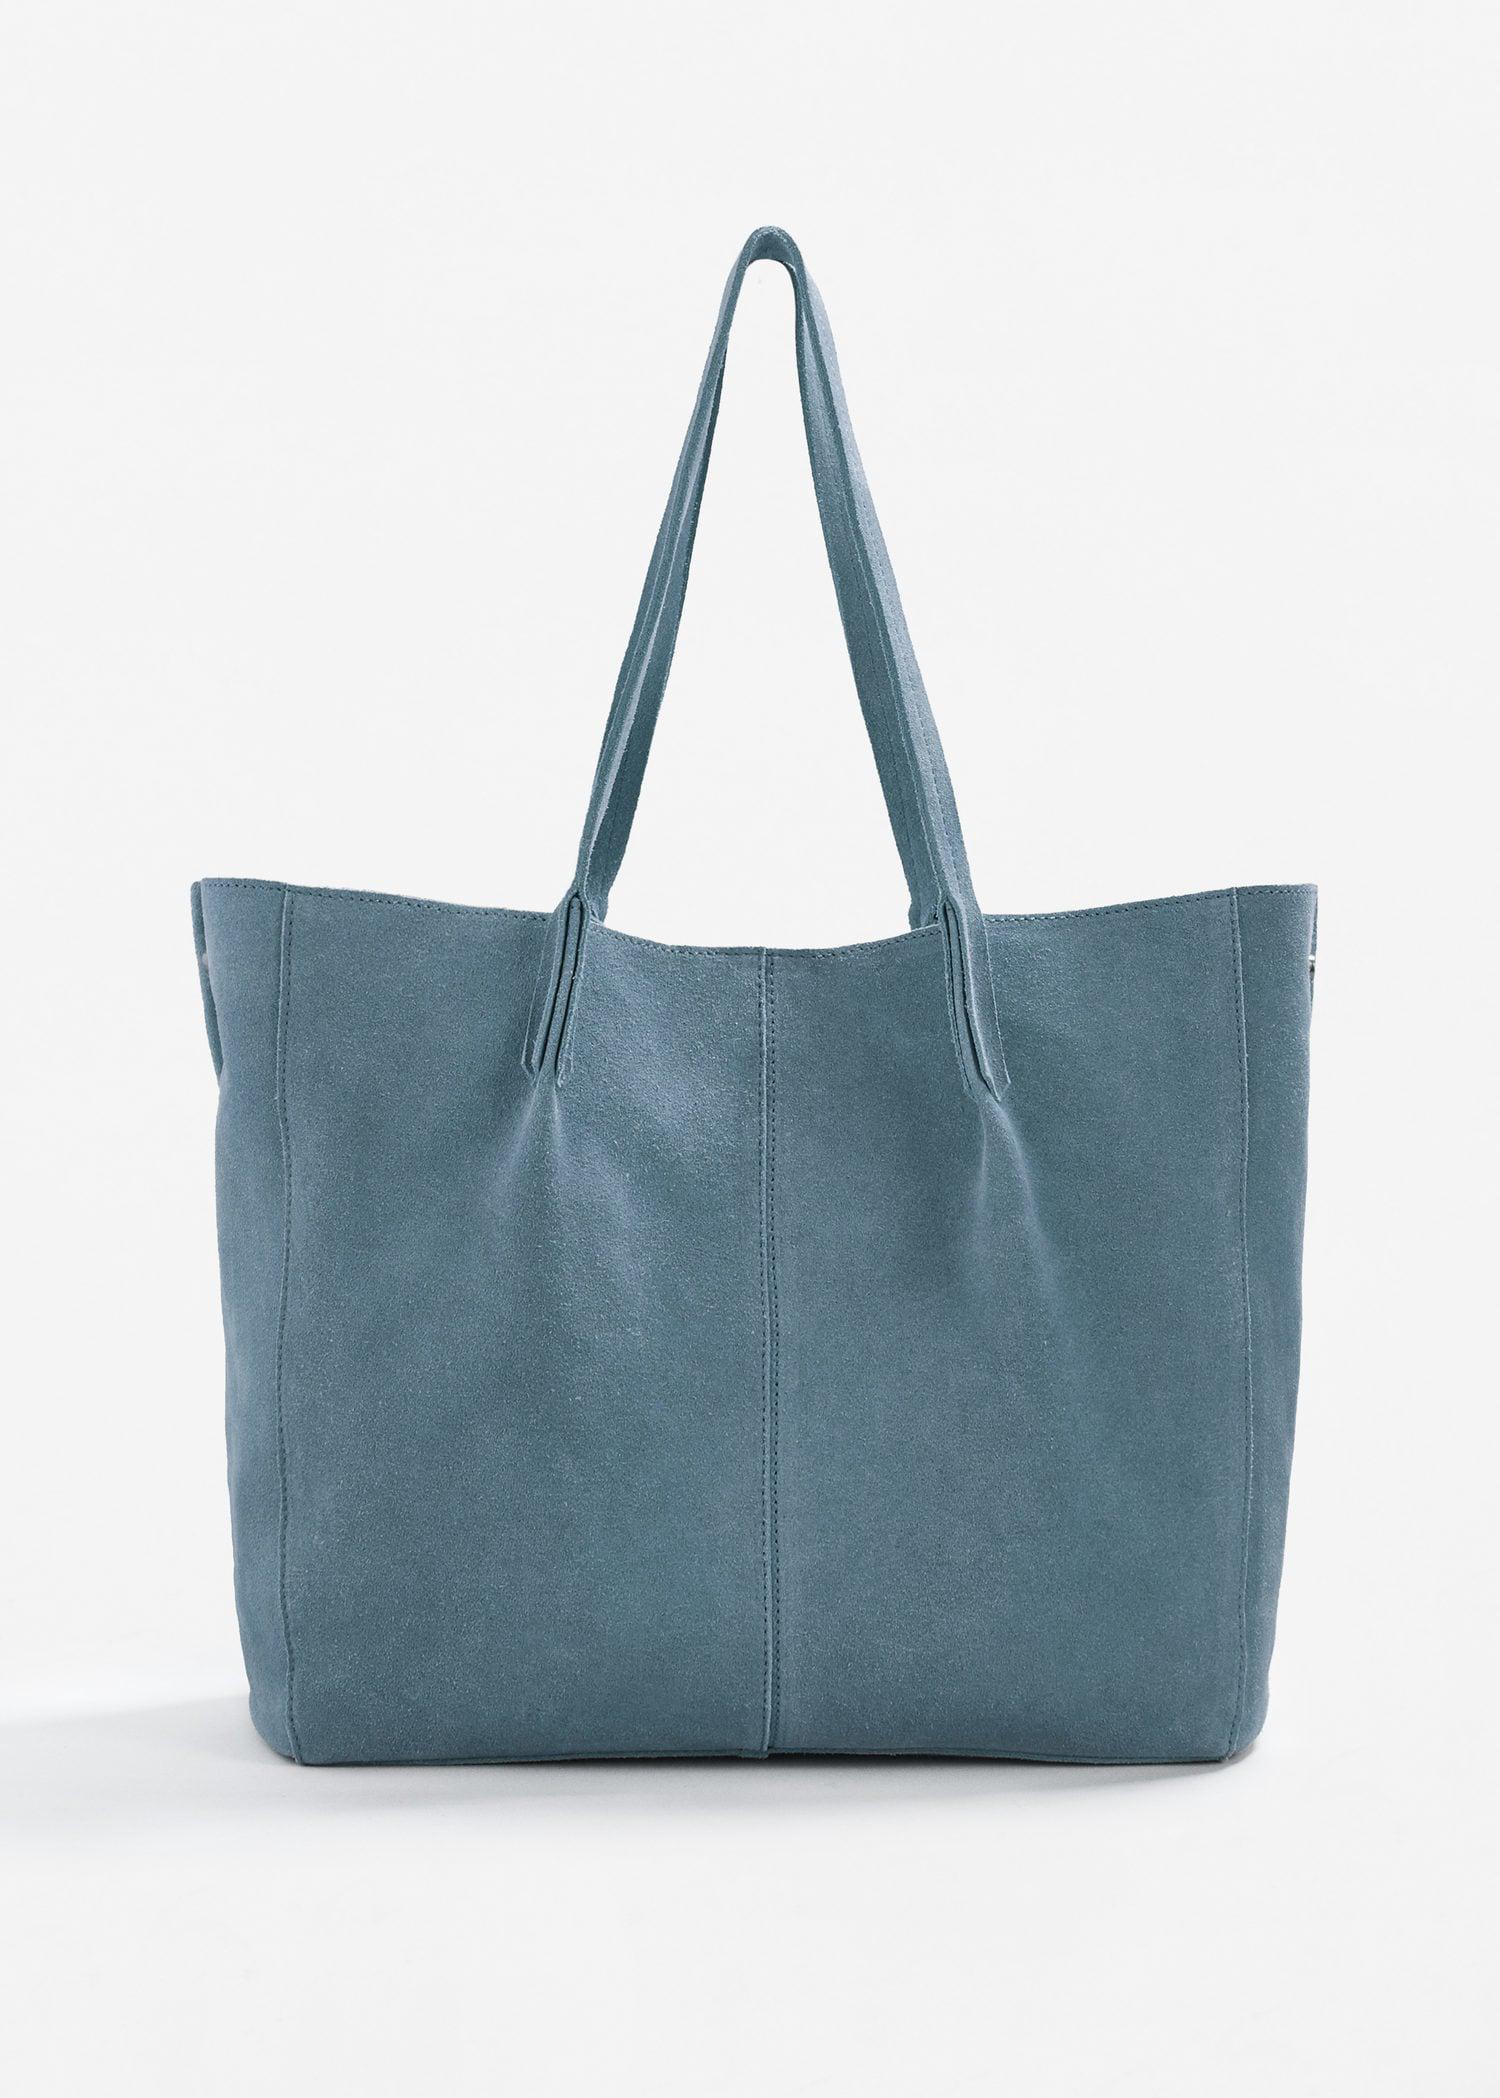 Mango Leather Shopper Bag in Blue - Lyst